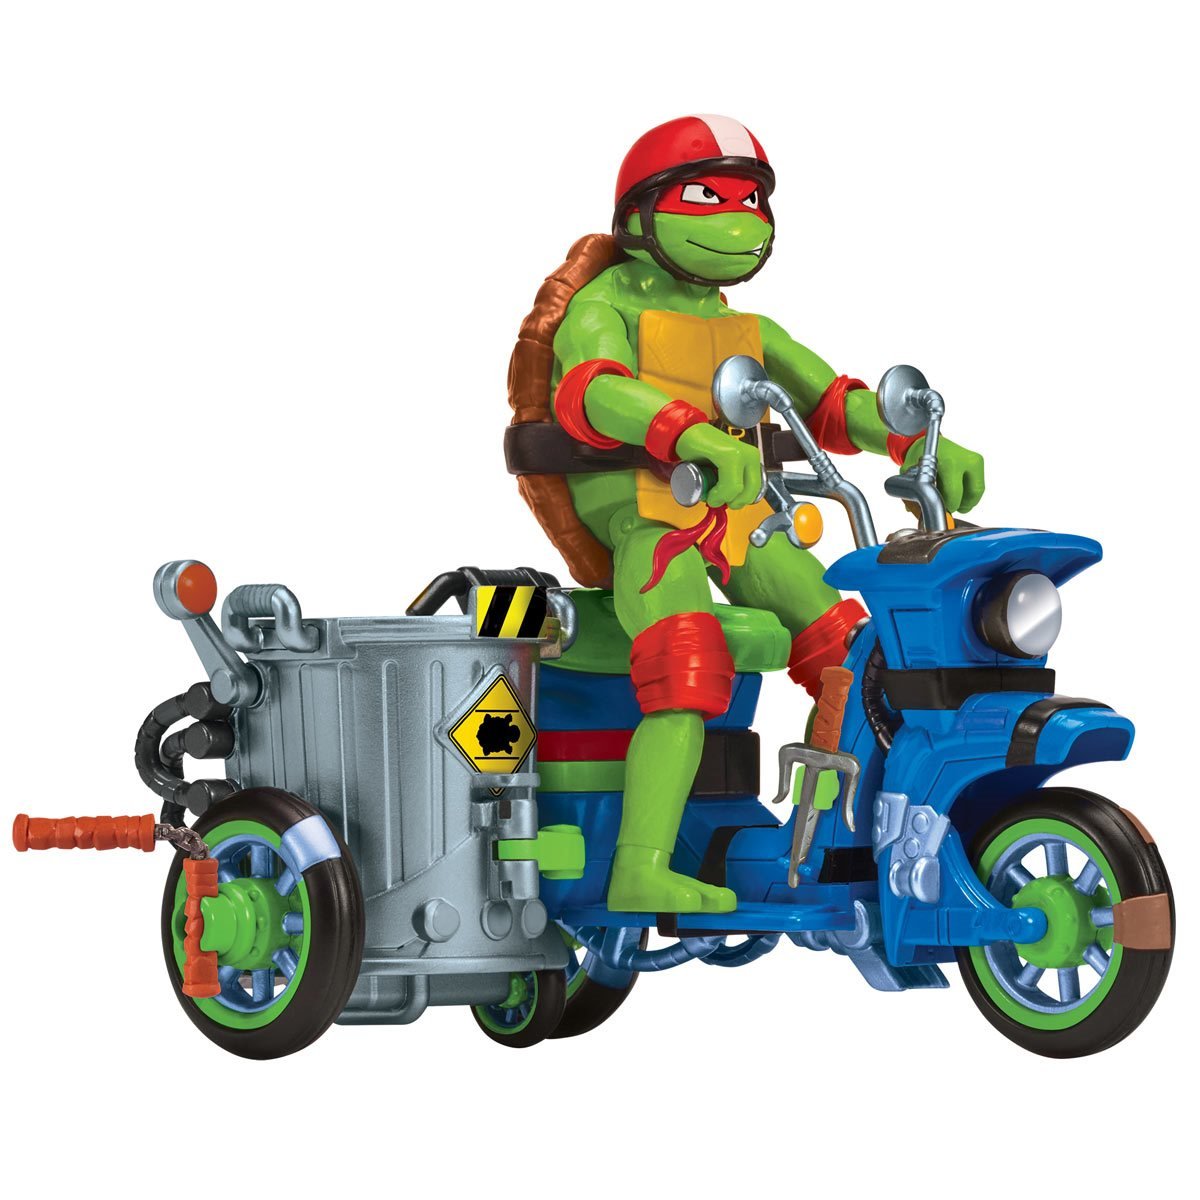 PLAYMATES Teenage Mutant Ninja Turtles: Mutant Mayhem Movie Battle Cycle with Raphael Figure